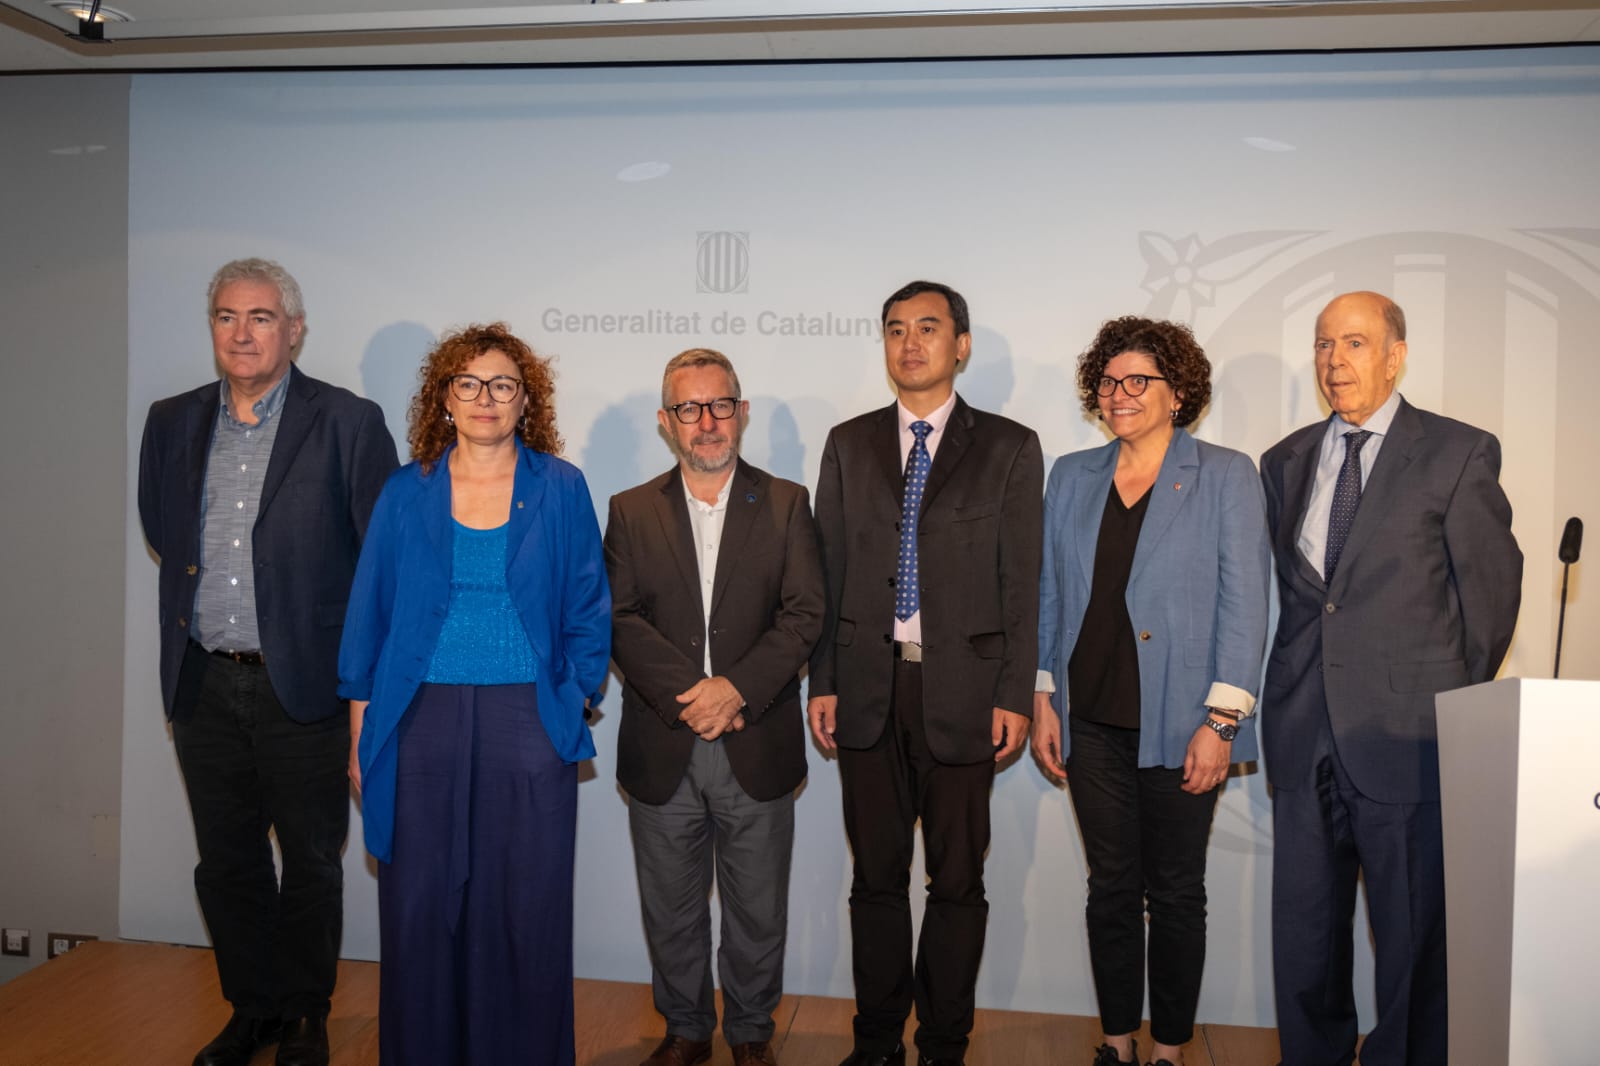 La conferència s'ha dut a terme al Palau Robert de Barcelona. Foto: Cedida